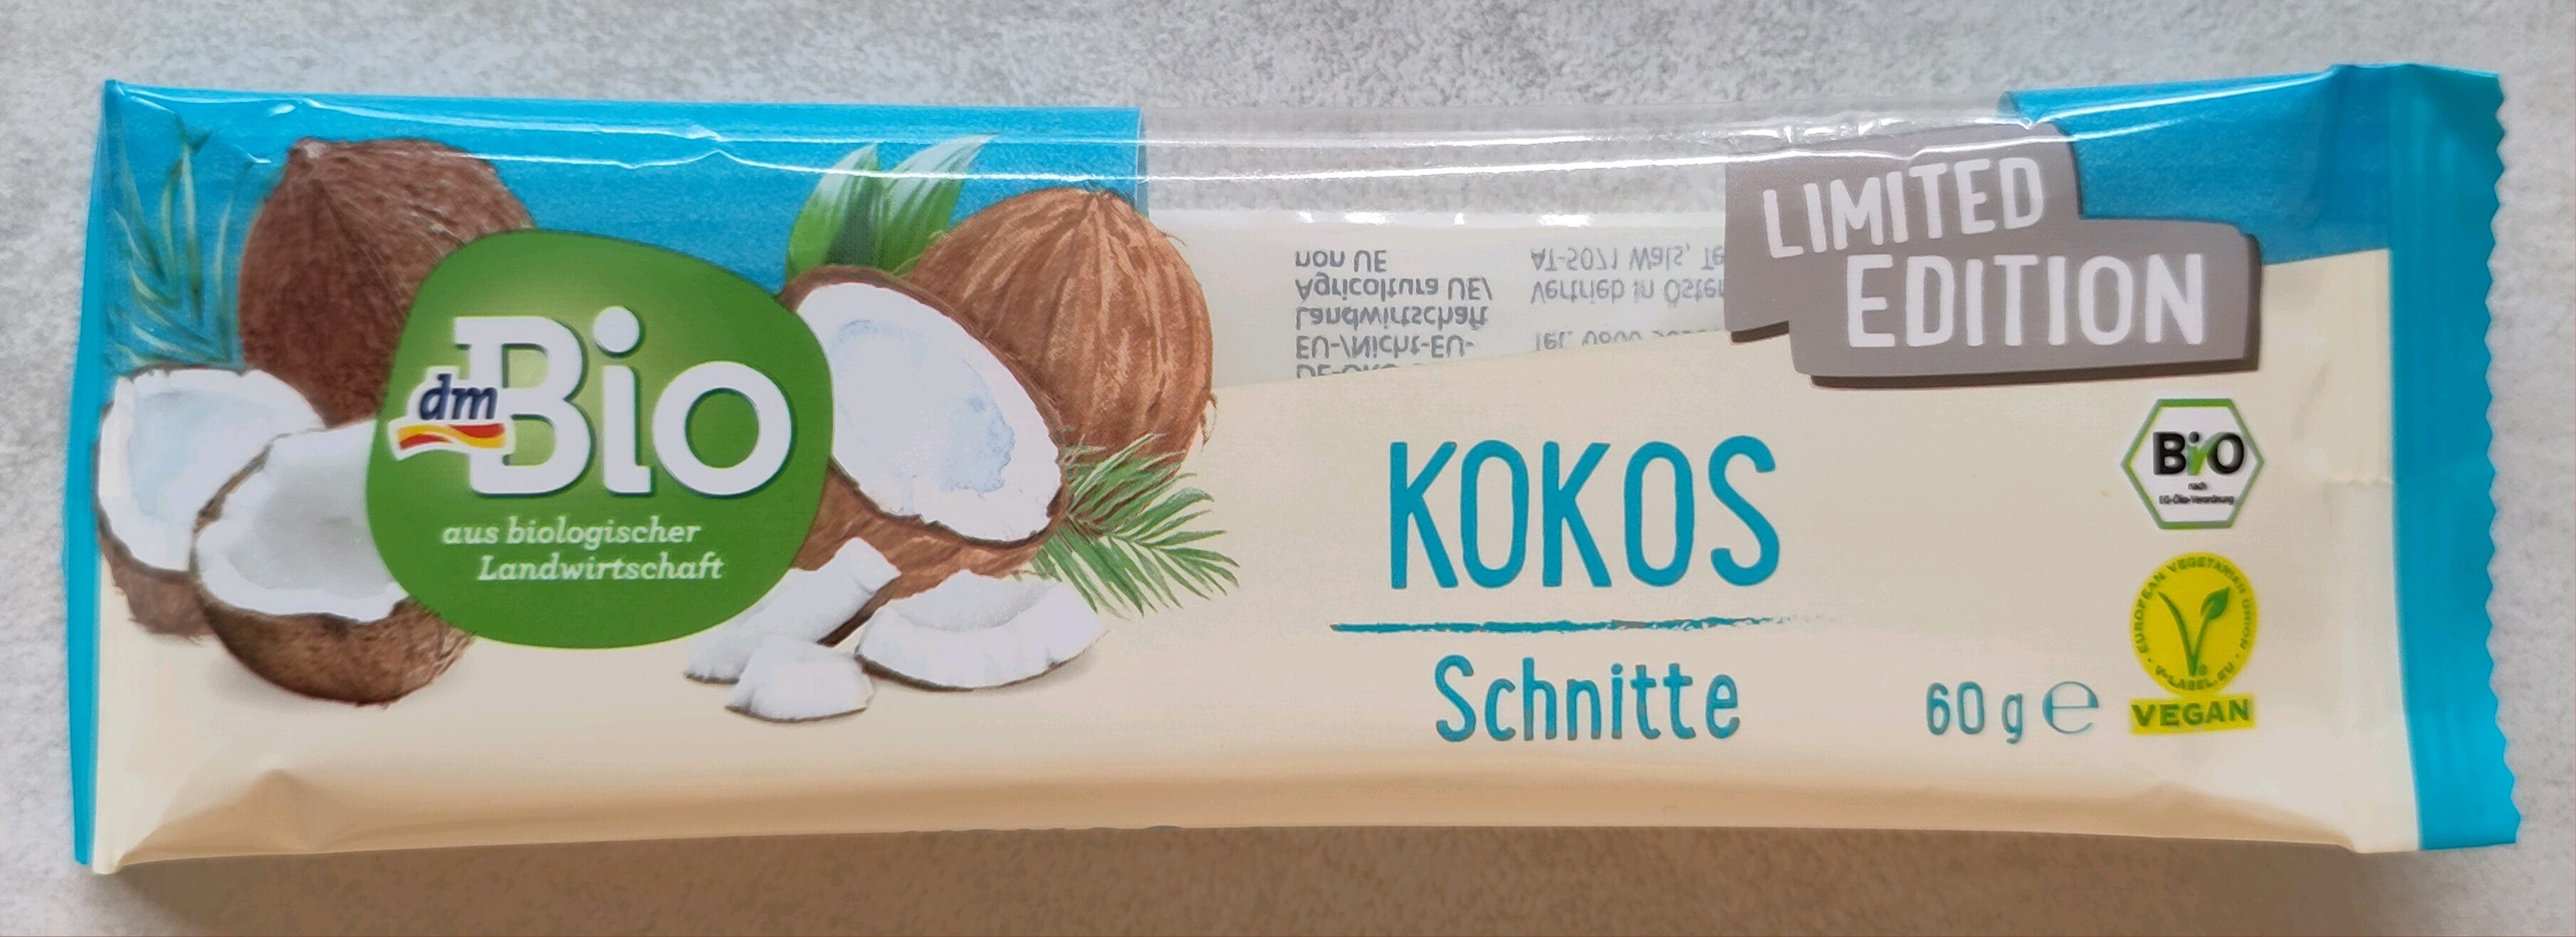 Kokos-Schnitte - Limited Edition - Wiederverwertungsanweisungen und/oder Verpackungsinformationen